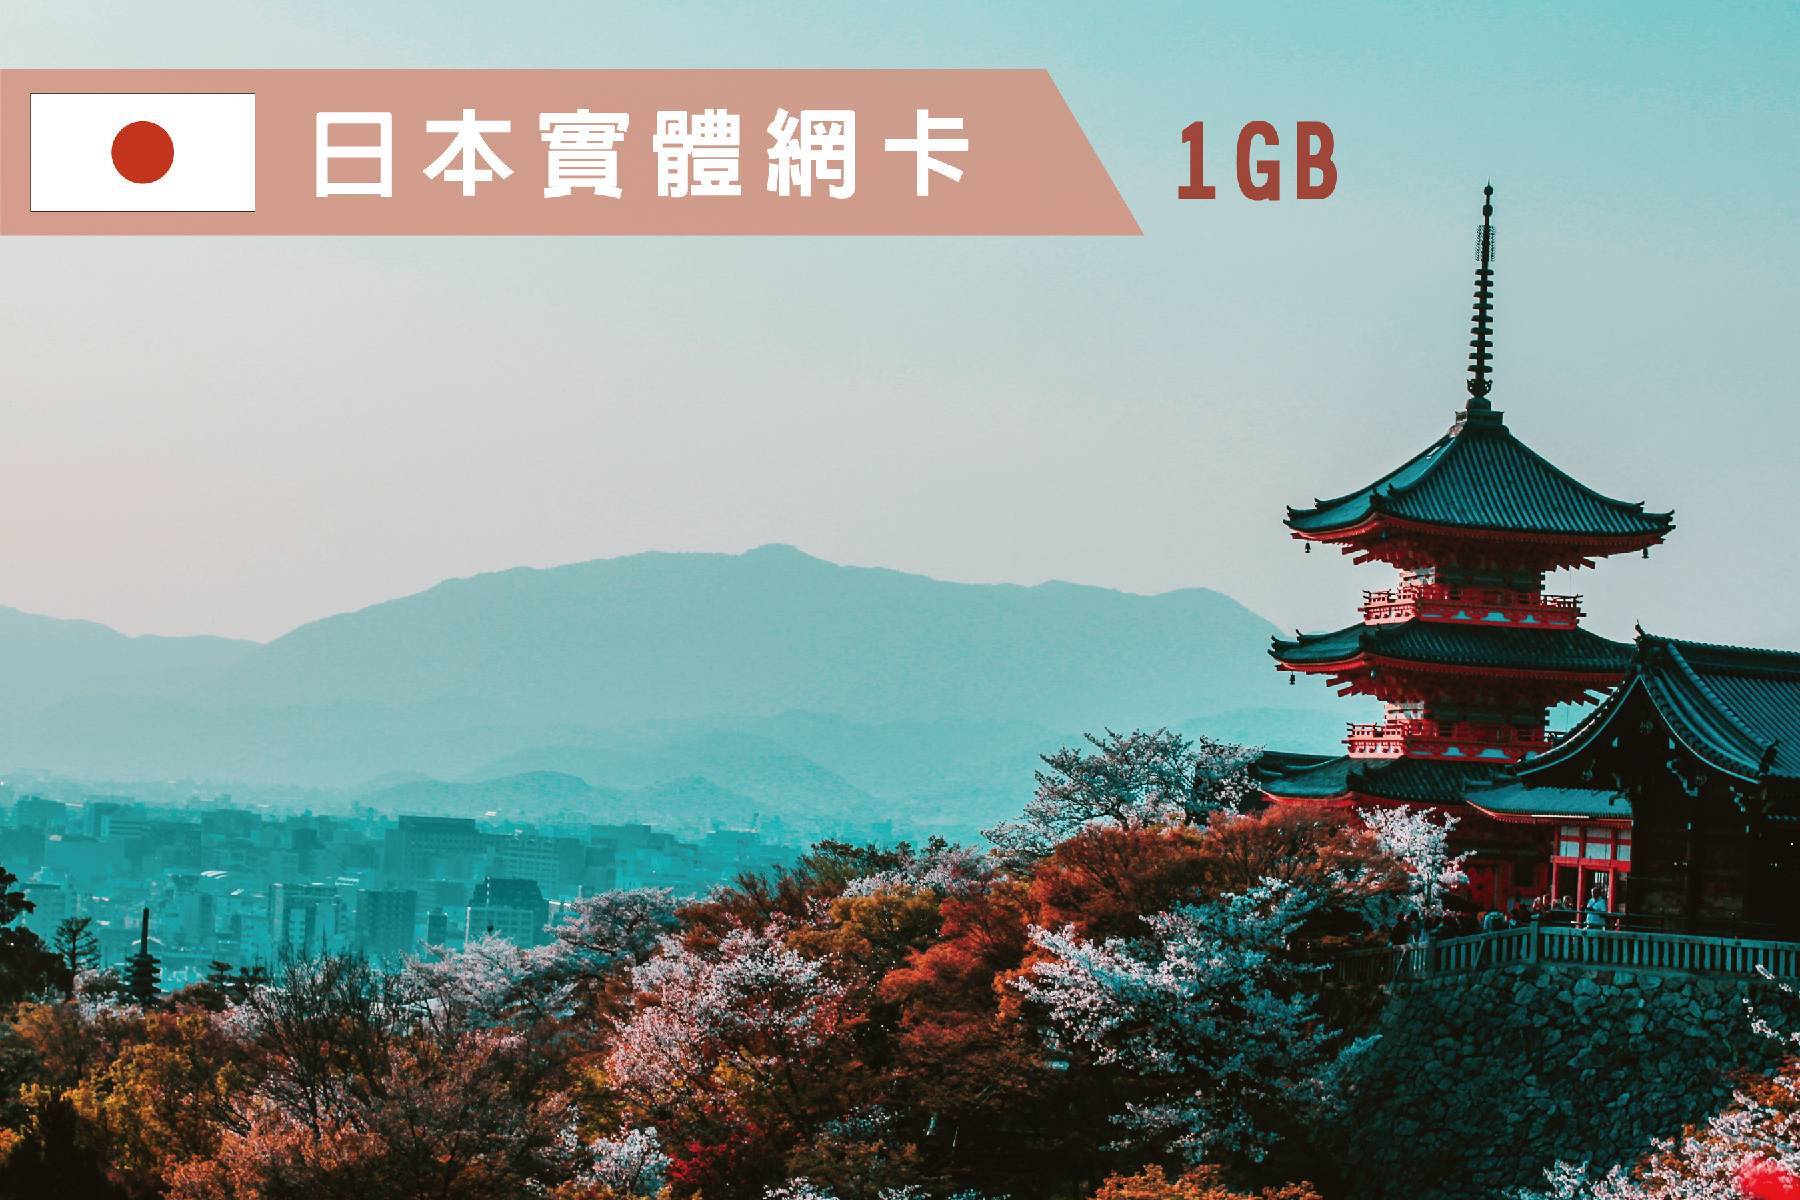 Ⓨ日本-8天每日1GB超過降速吃到飽上網卡1